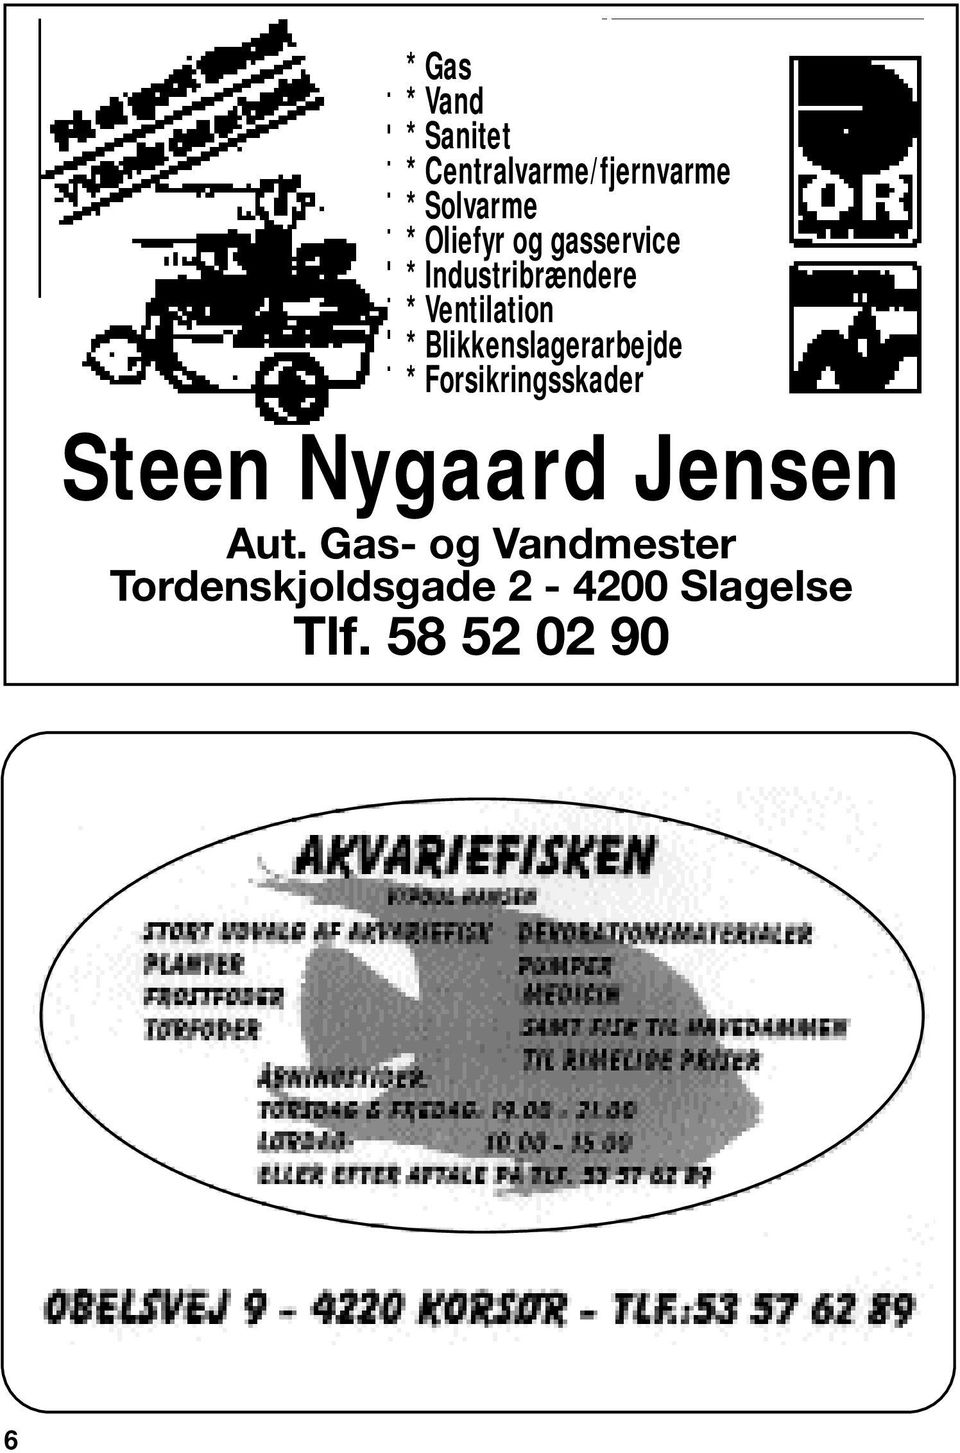 Blikkenslagerarbejde * Forsikringsskader Steen Nygaard Jensen